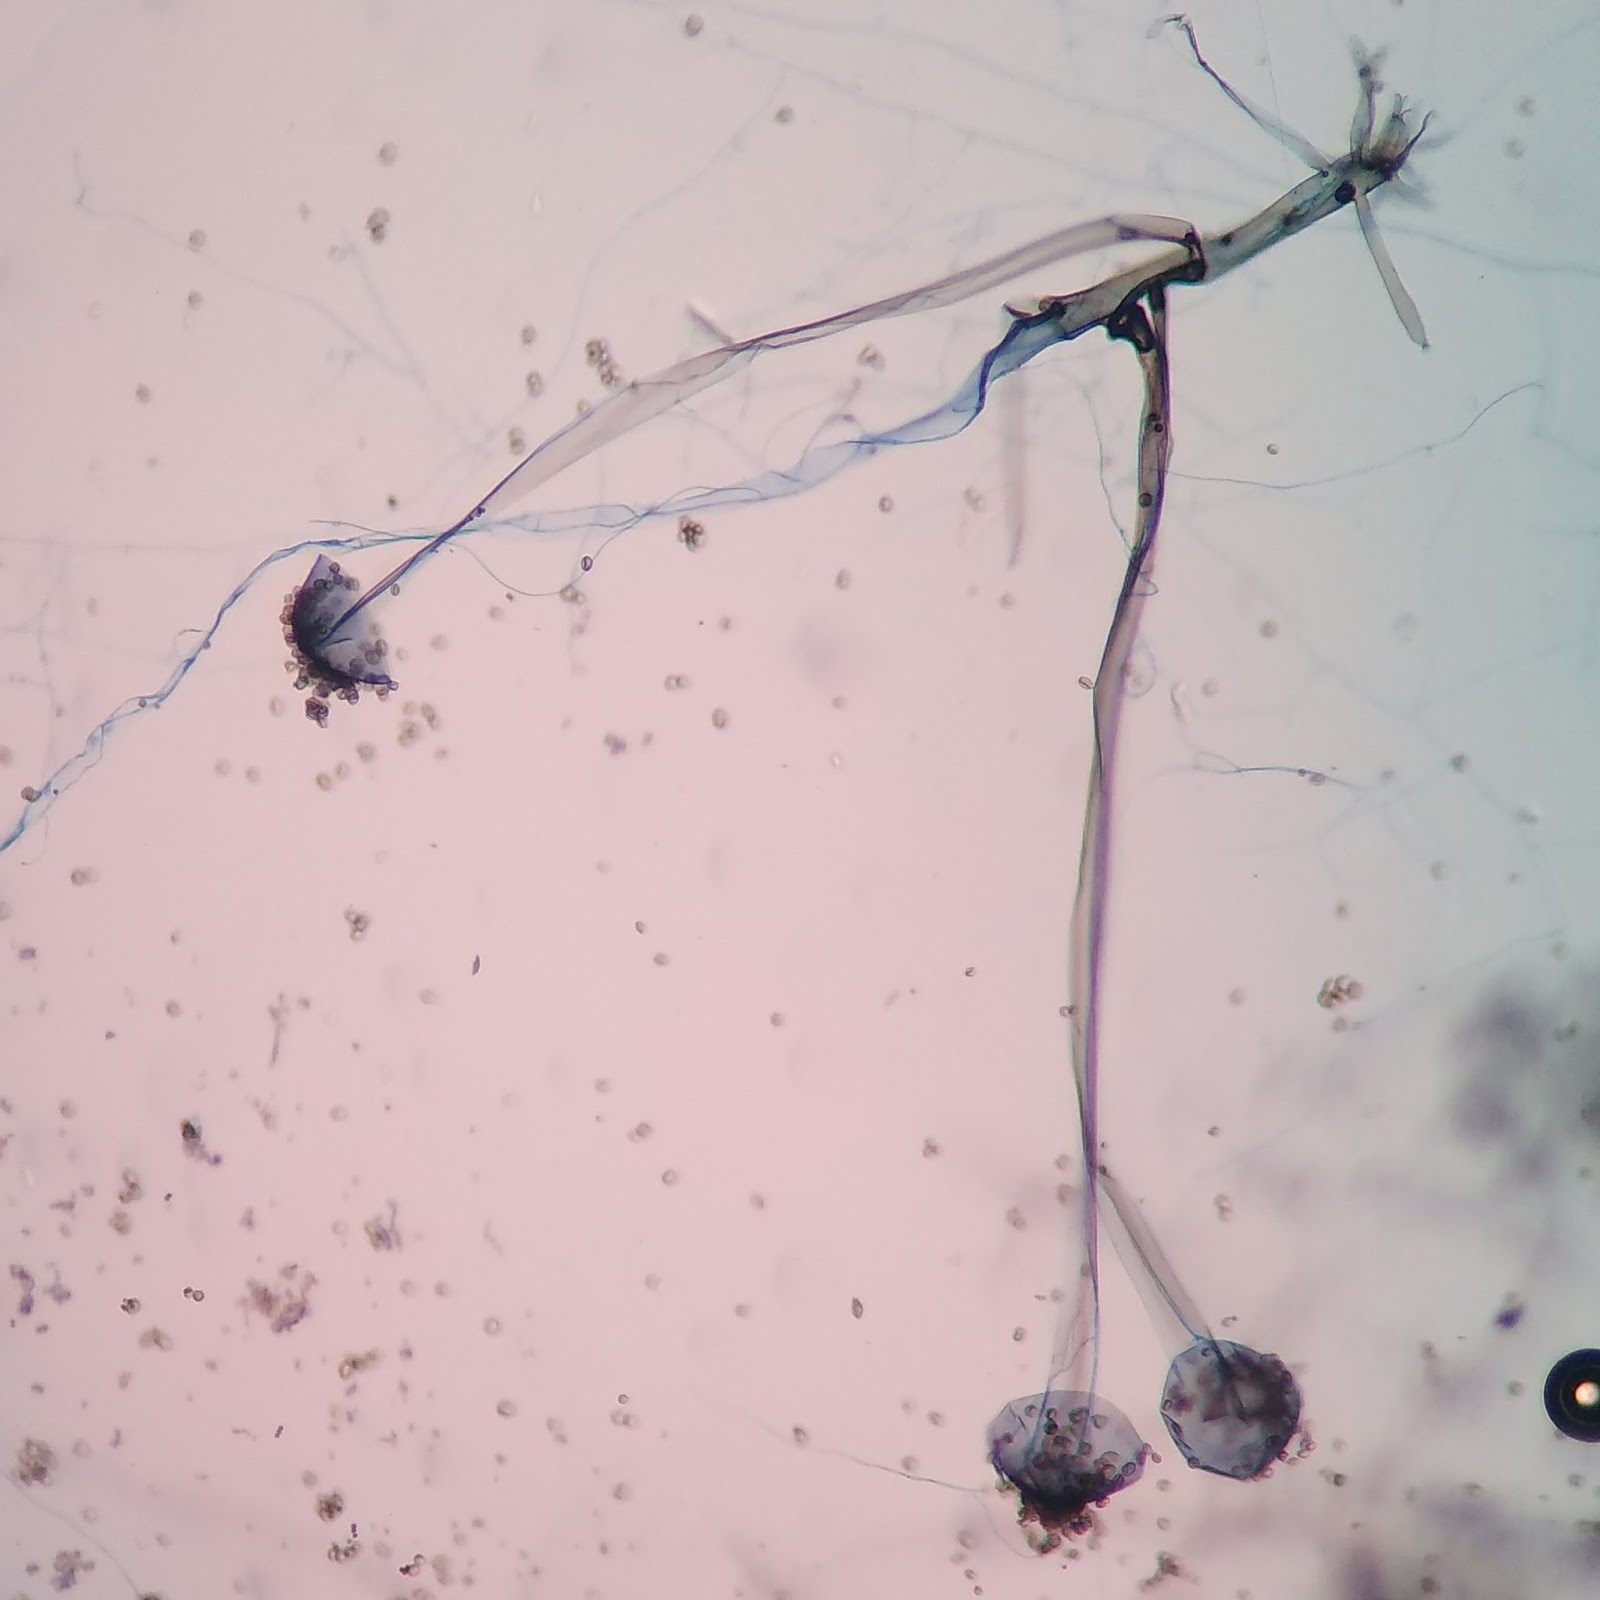 Мукор обыкновенный. Мукор ризопус. Rhizopus oryzae. Плесень ризопус (Rhizopus oligosporus). Rhizopus 40x под микроскопом.